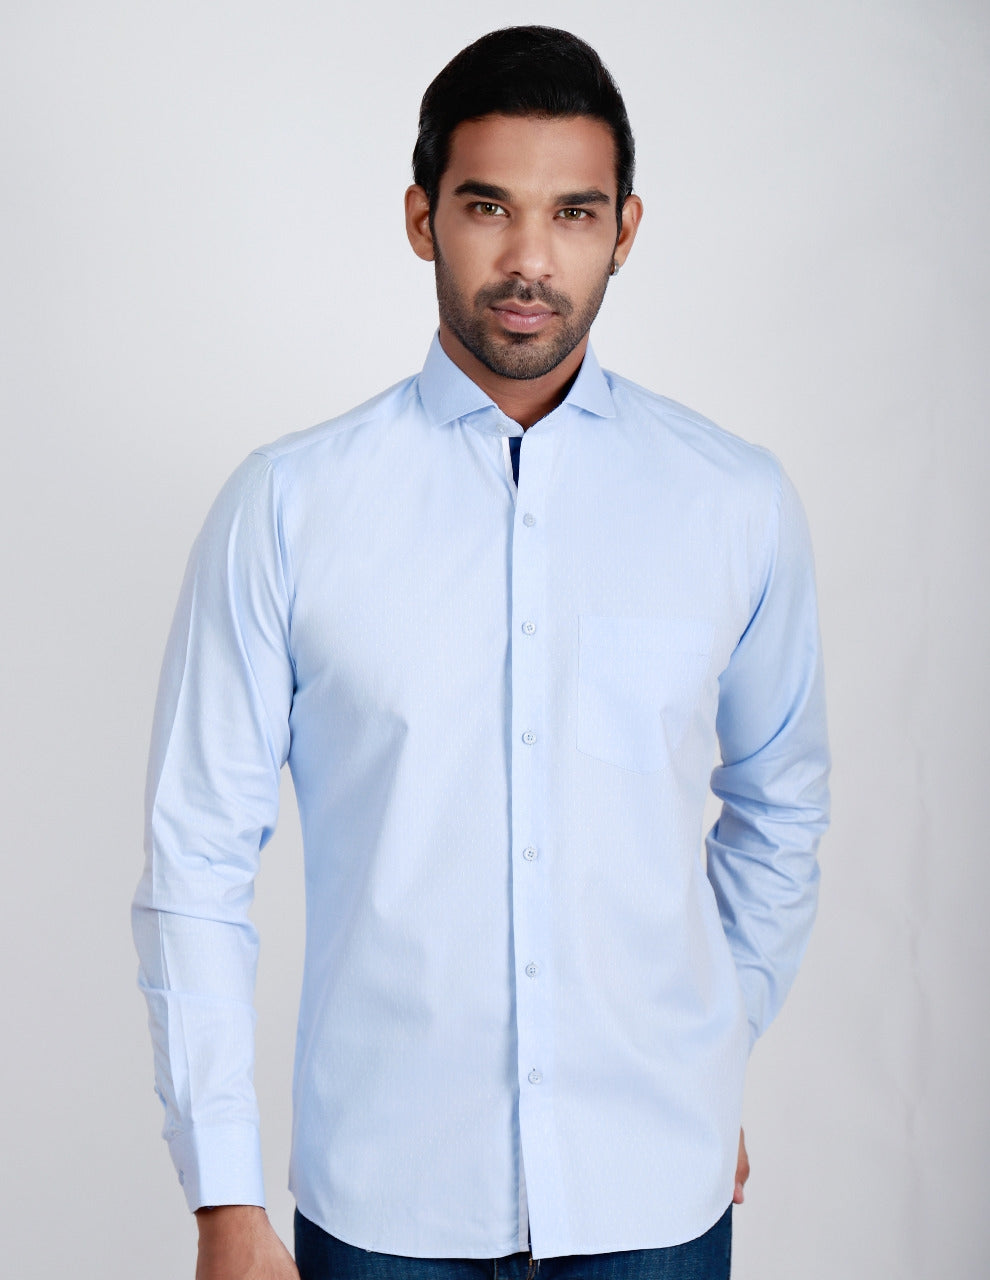 Men's Blue Full Sleeve Formal Shirt - ACE 15006 (W19)